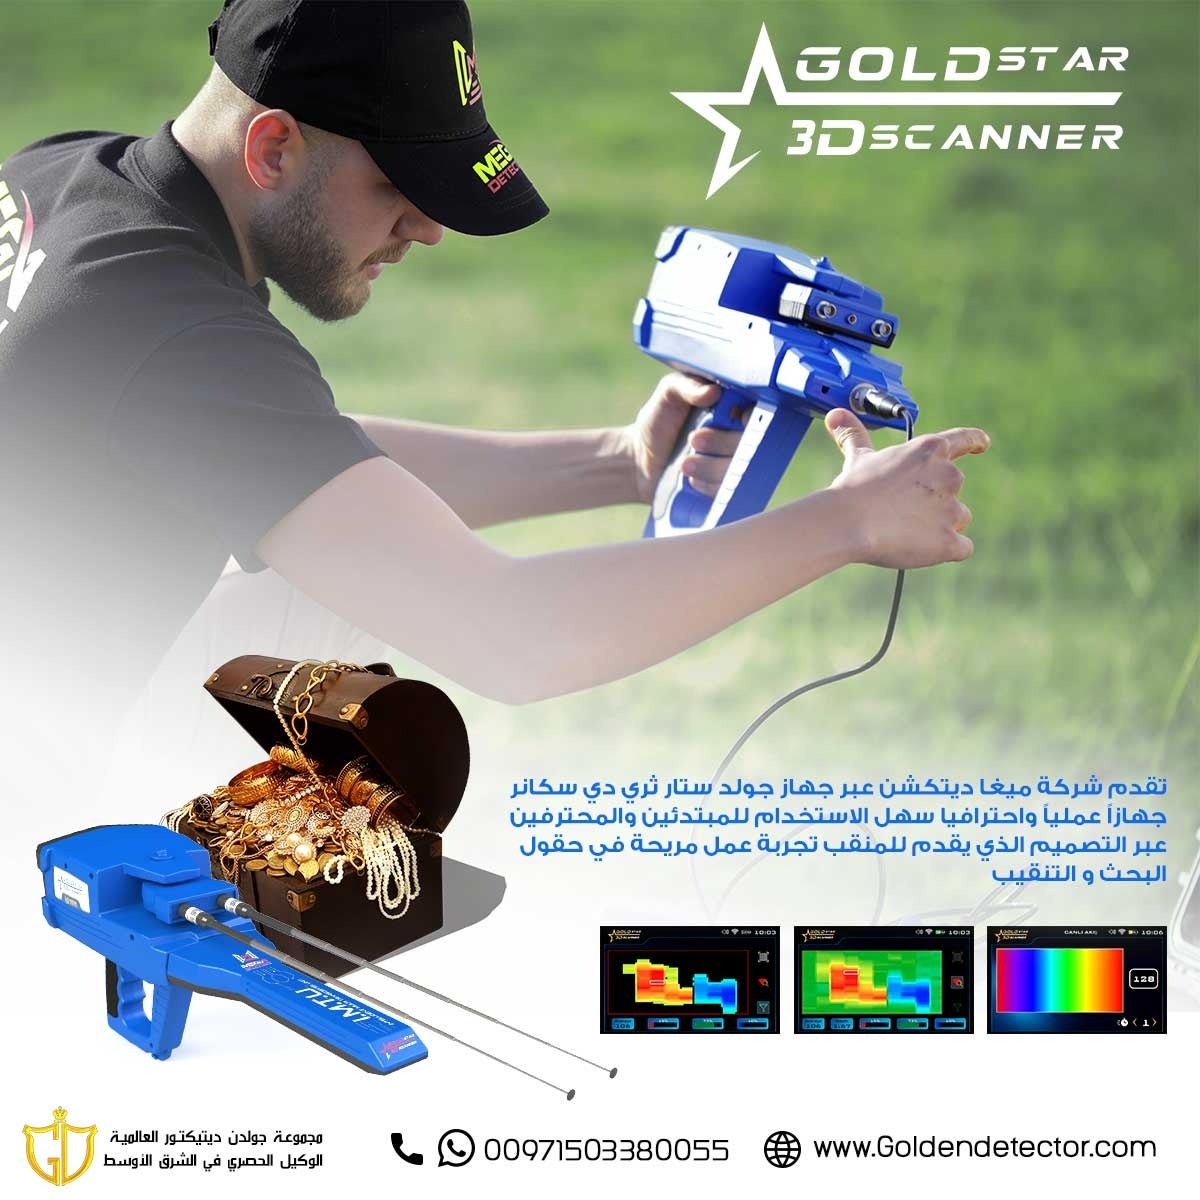 جولدستار ثري دي سكانر – Gold Star 3D Scanner جهاز كشف المعادن المتكامل